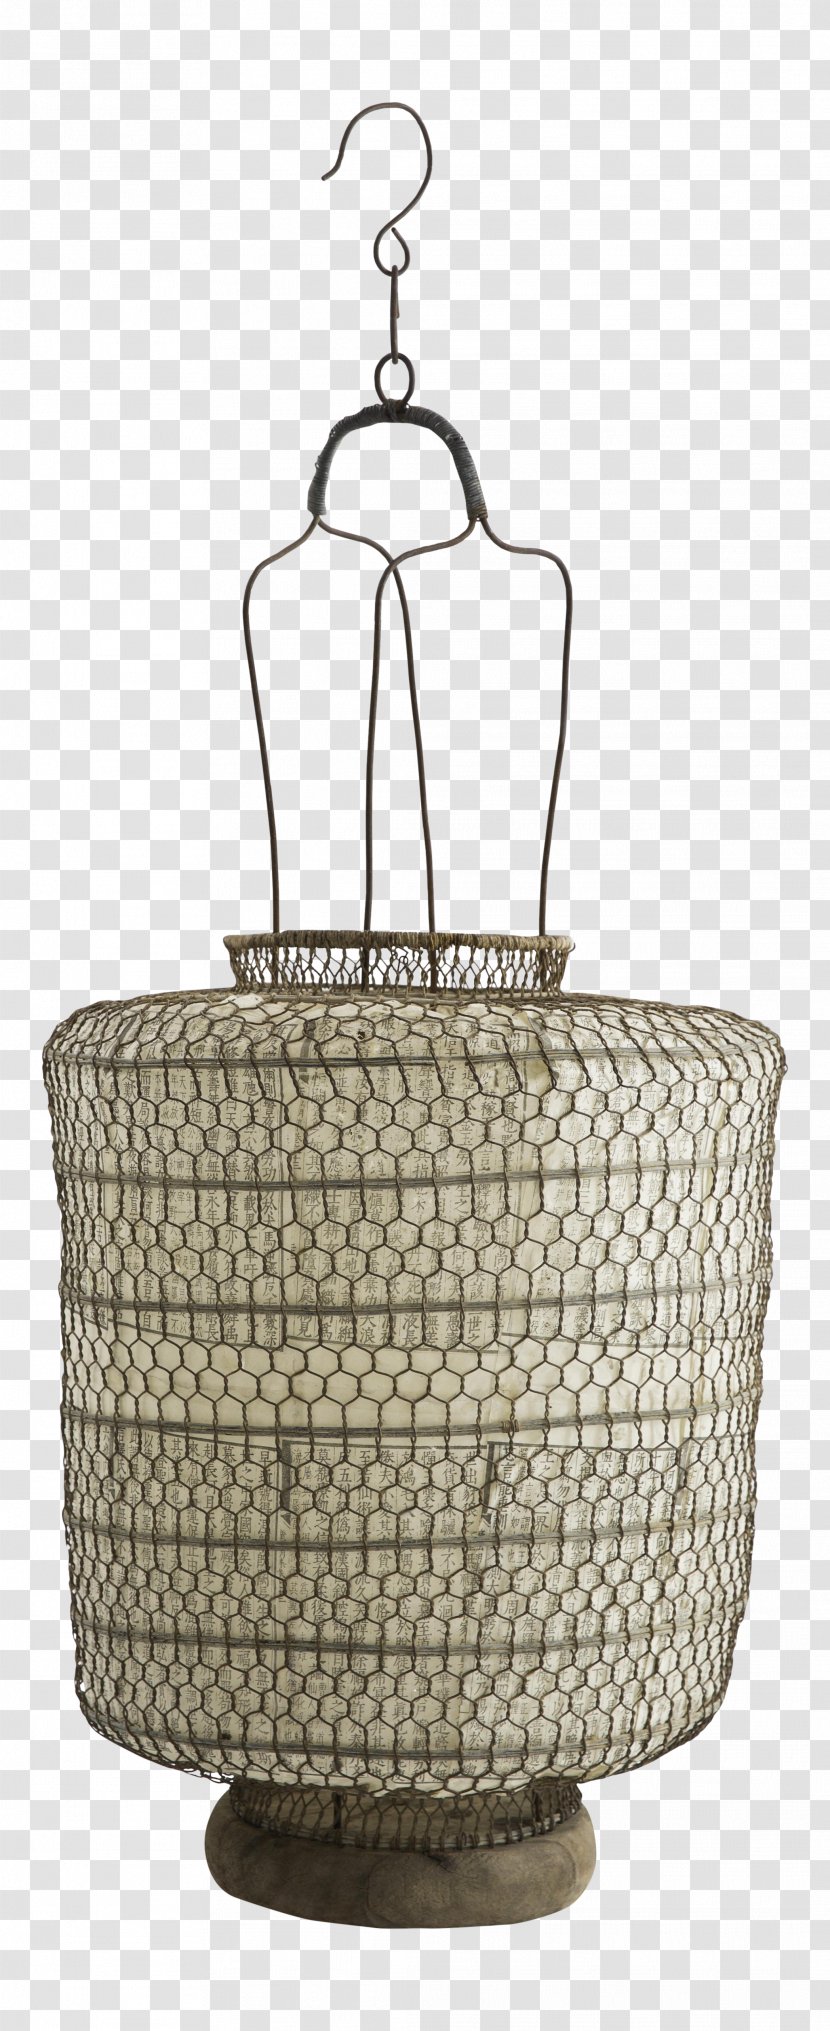 Basket - Chinese Lanterns Transparent PNG